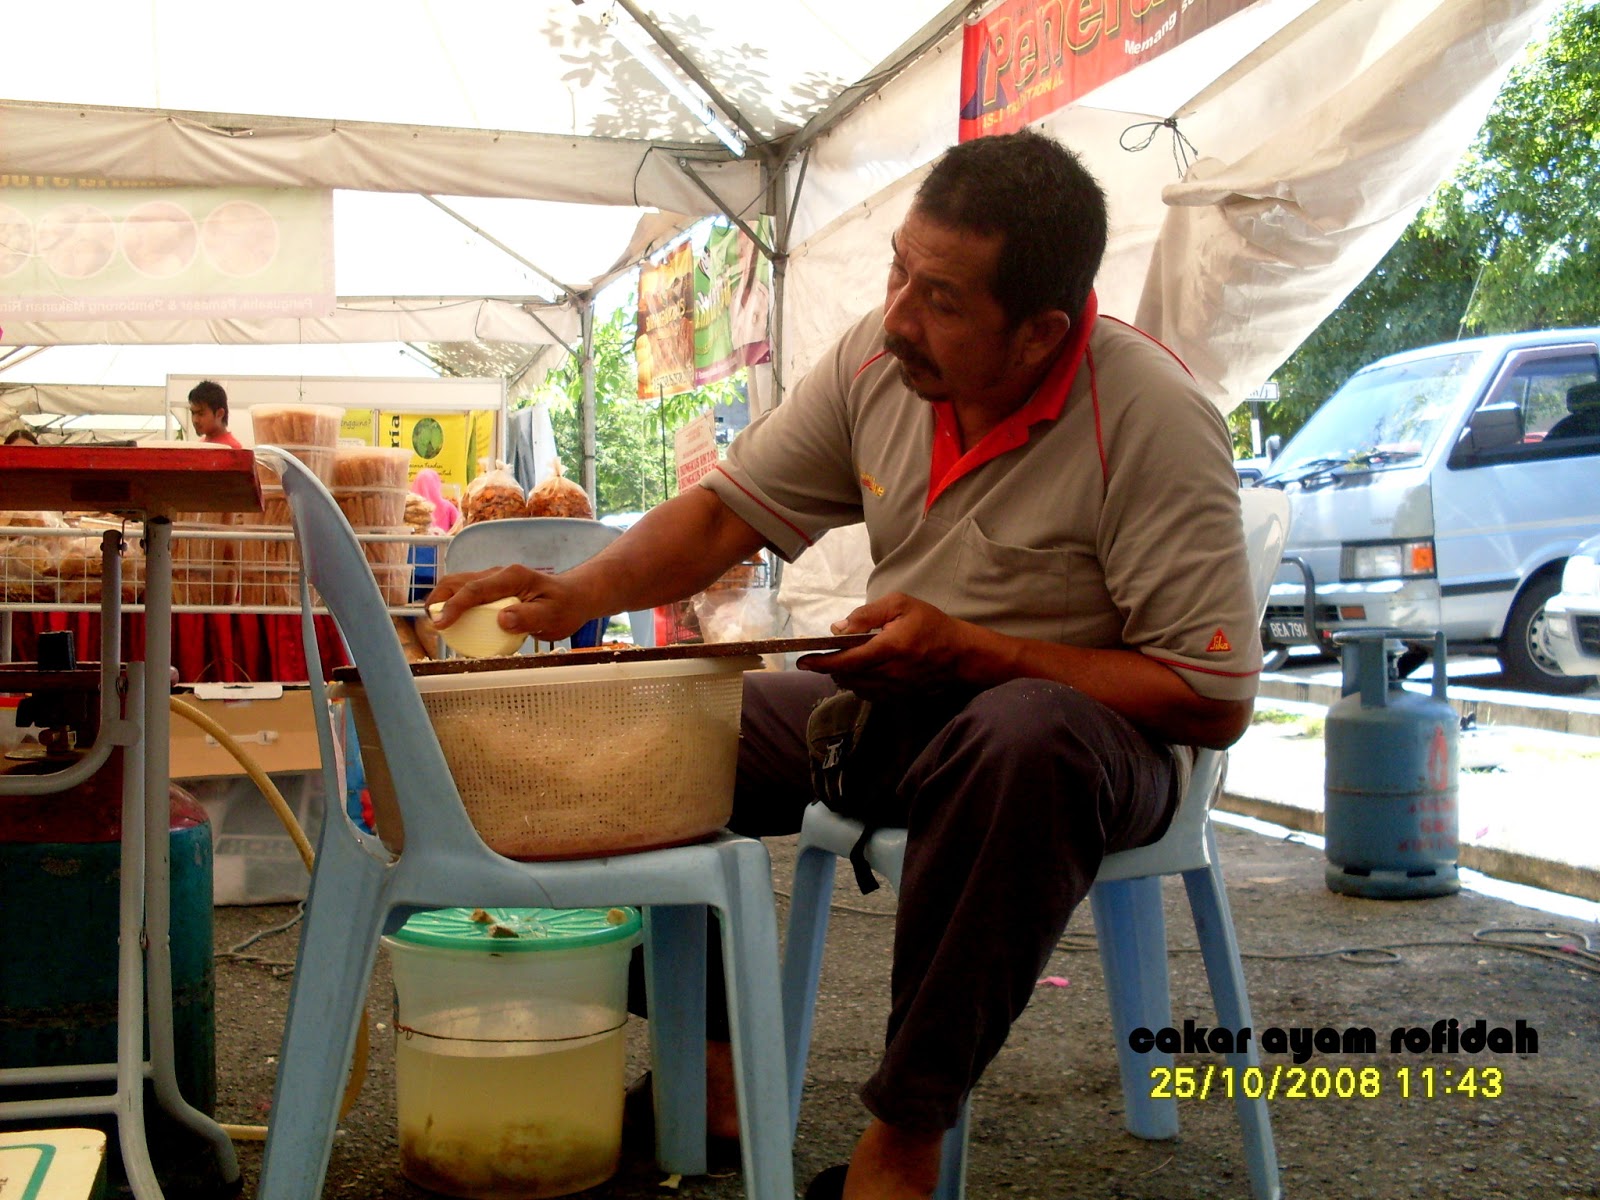 Produk Makanan Malaysia: Cakar Ayam daripada ubi keledek